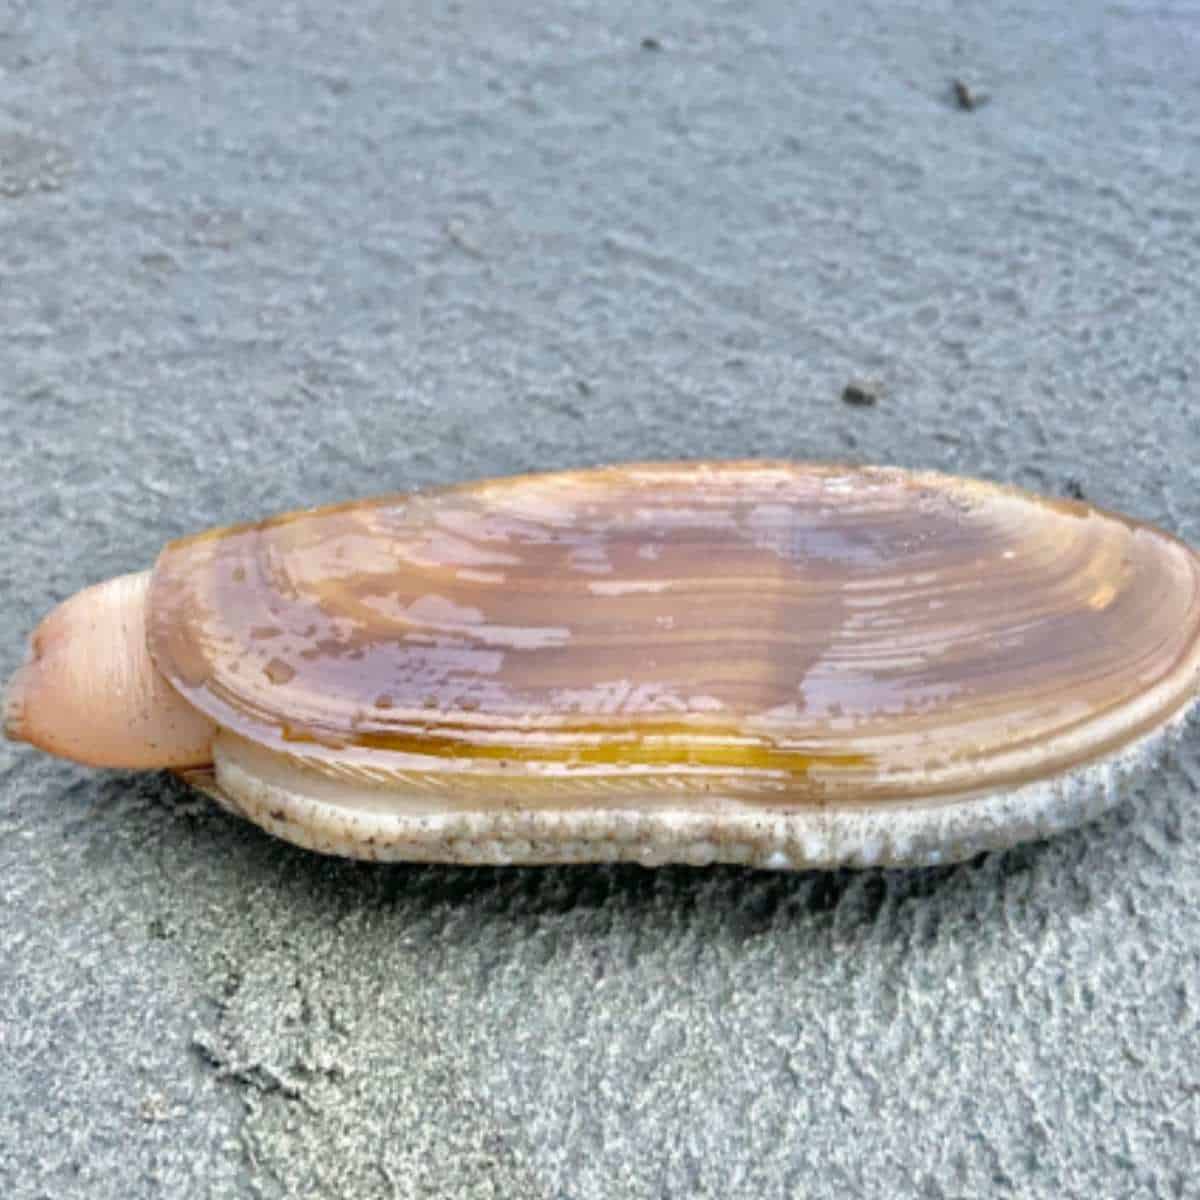 razor clam on sand